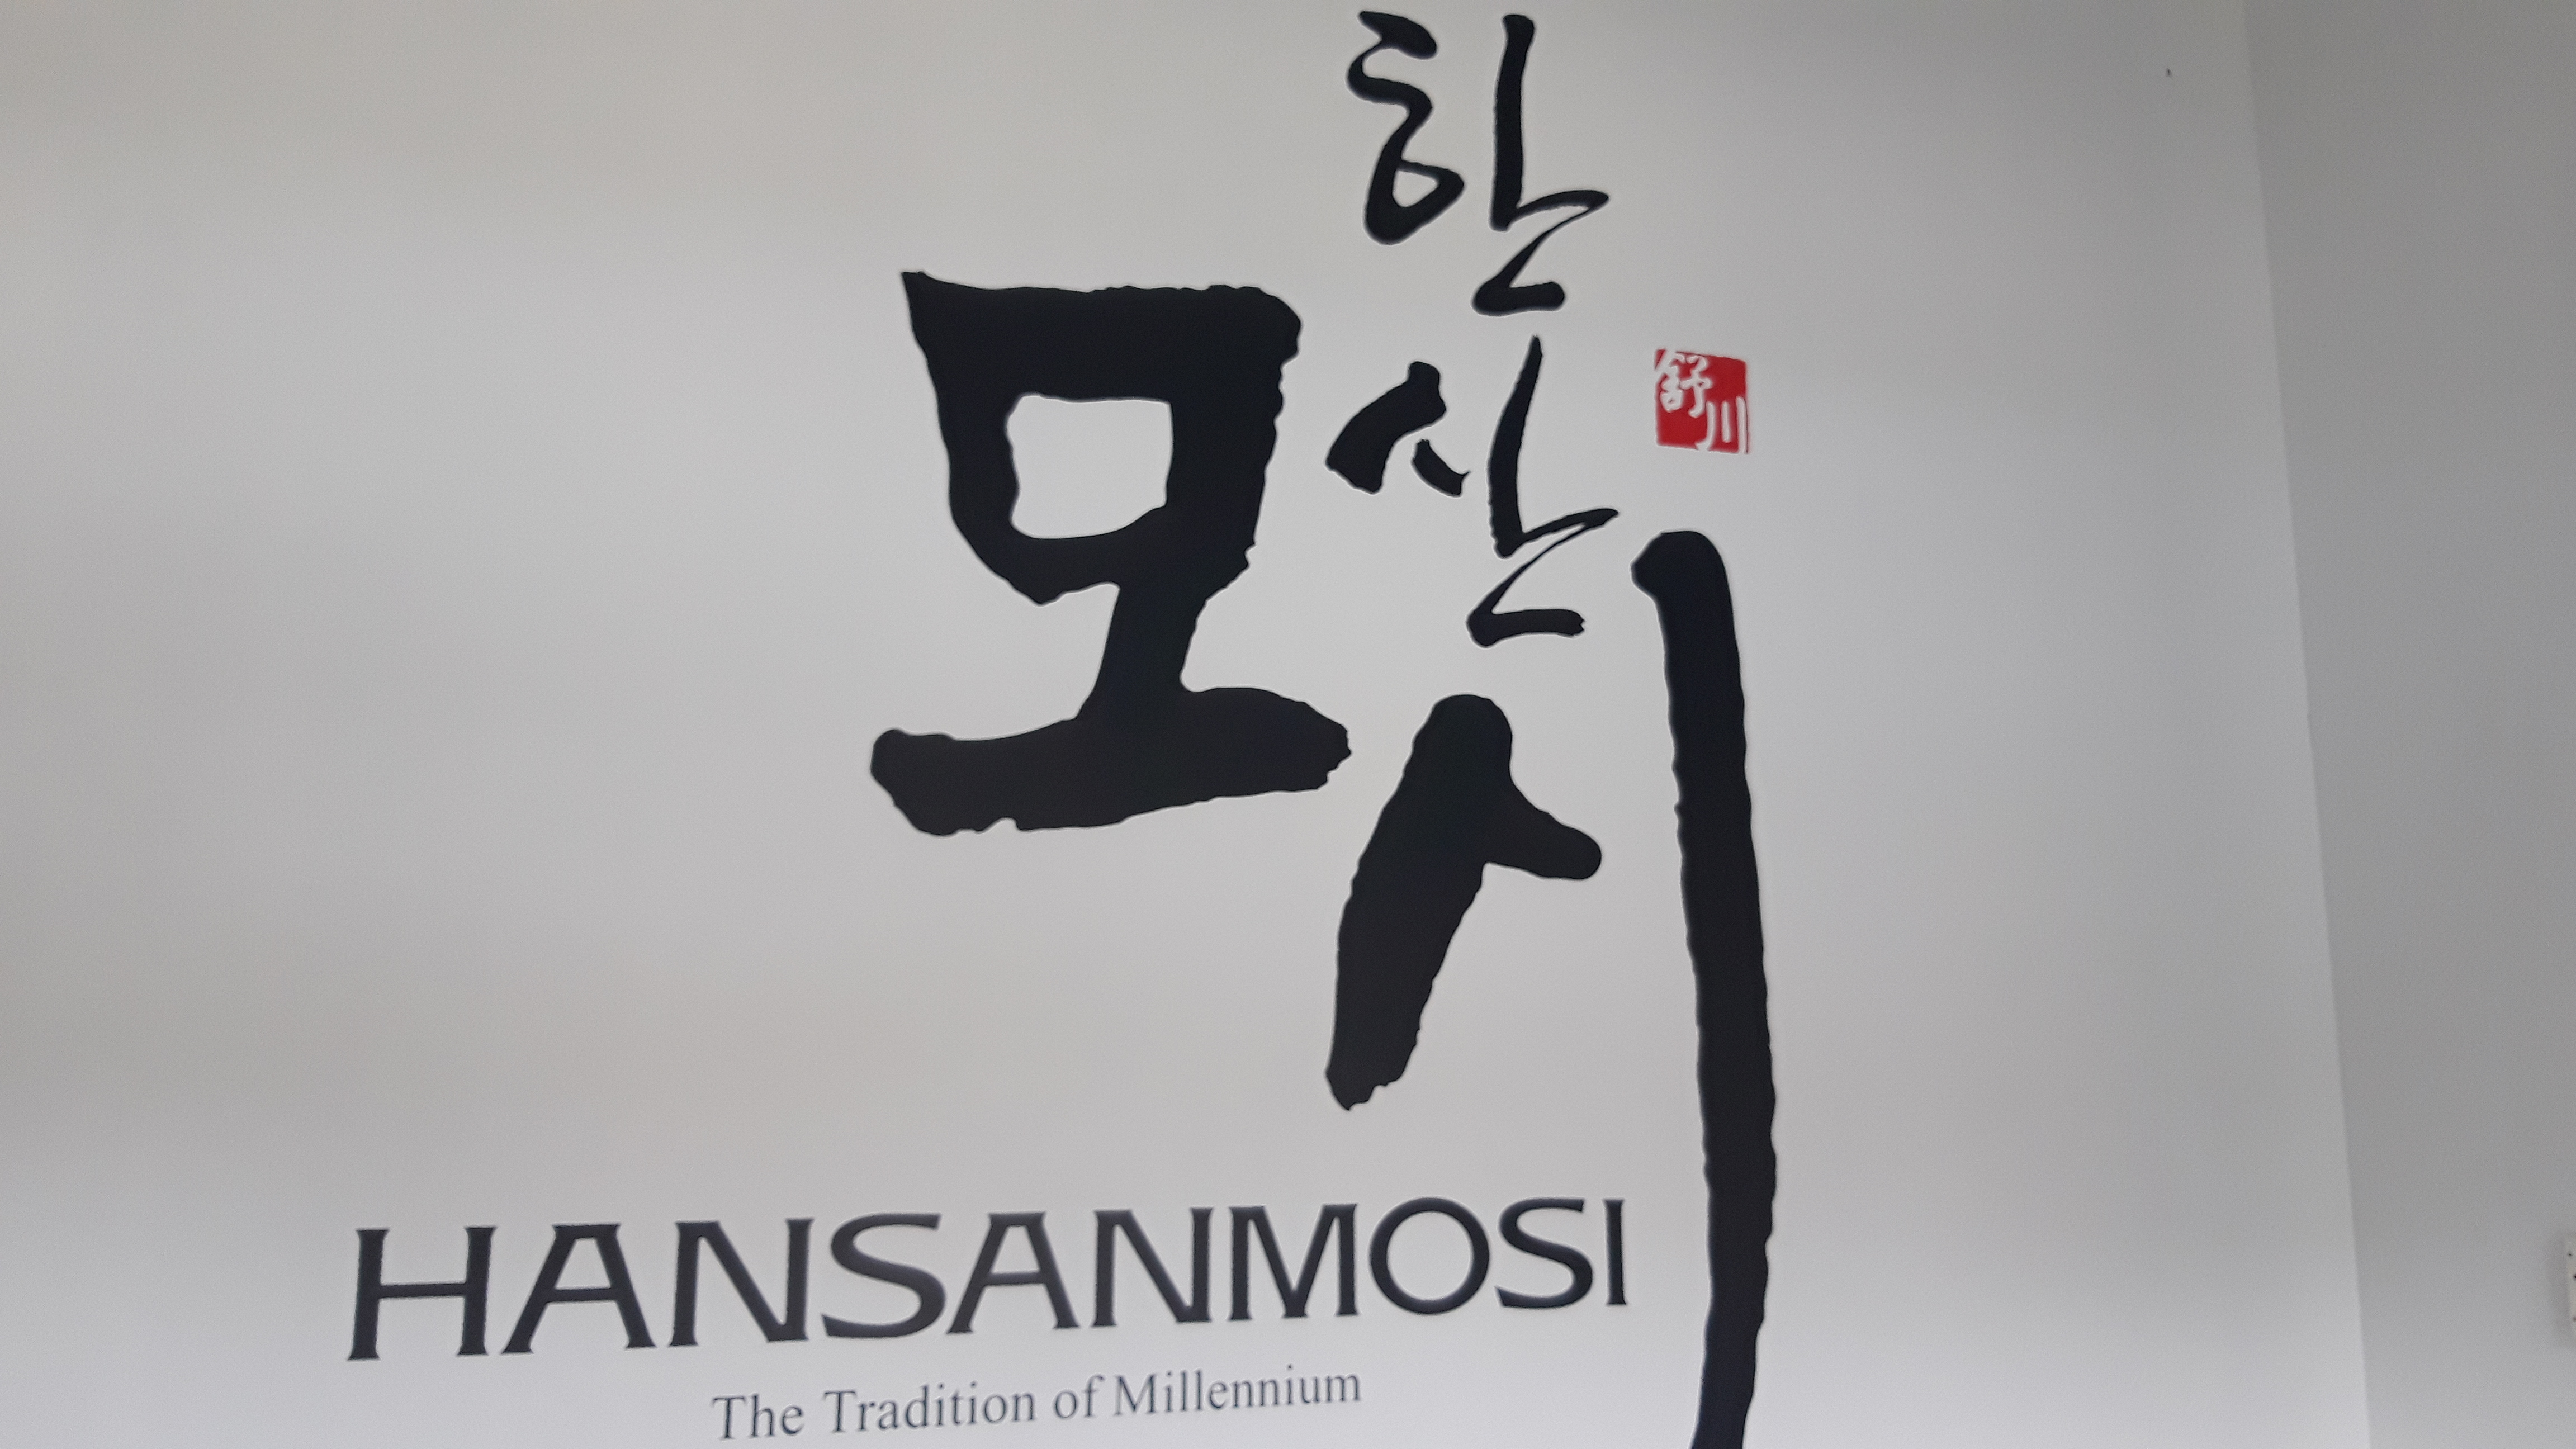 韓山カラムシ展示館